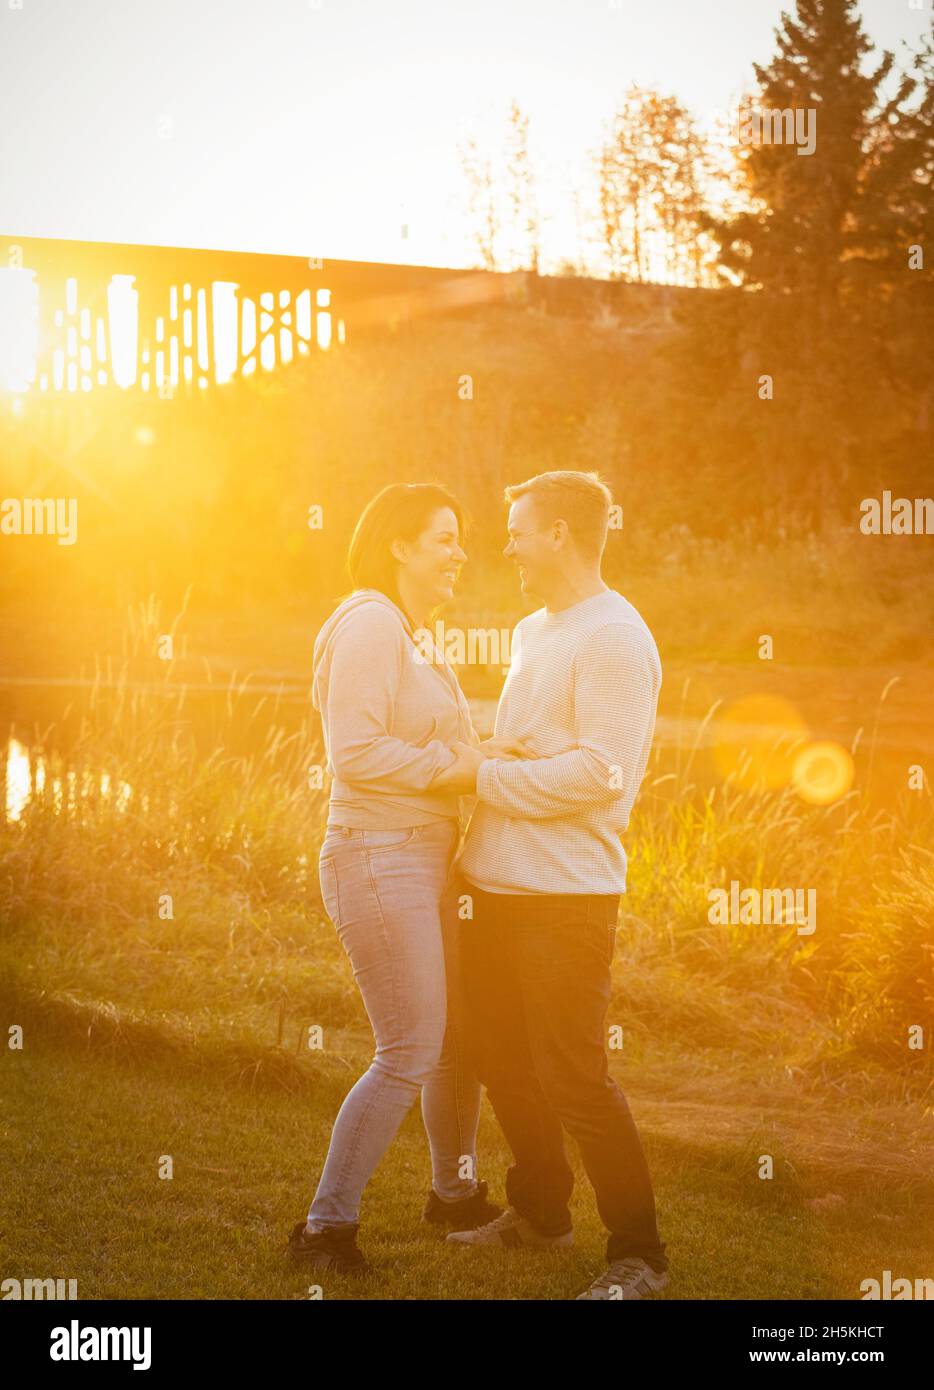 Una pareja de adultos de pie cara a cara y hablando juntos en un parque en otoño; St. Albert, Alberta, Canadá Foto de stock